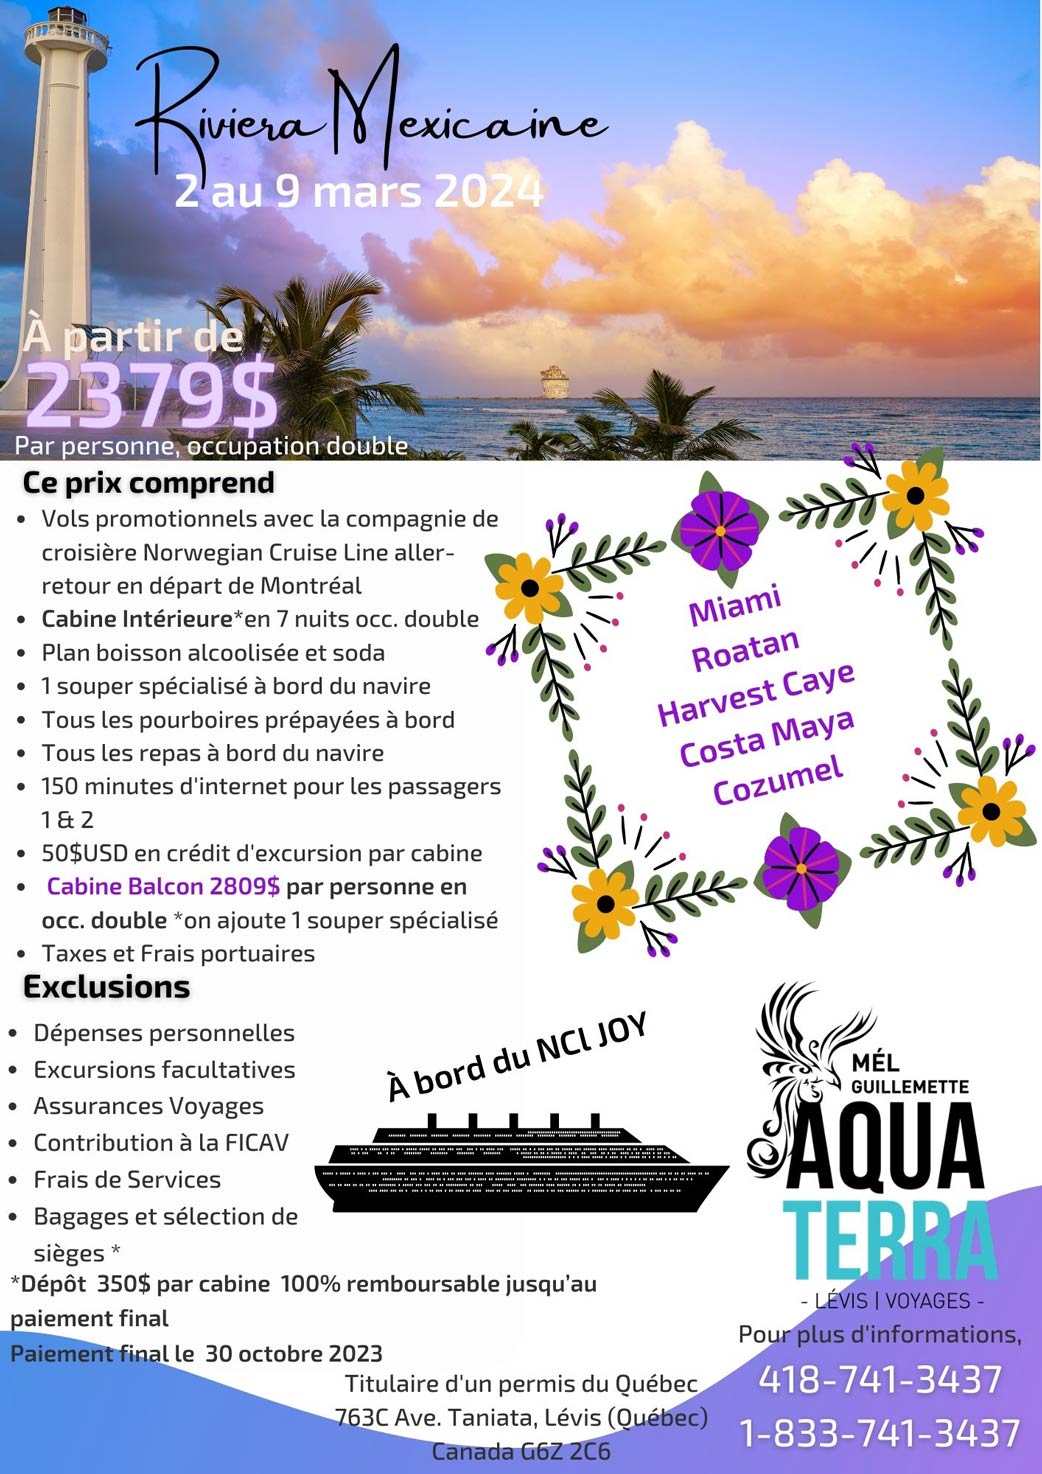 Croisière de la Riviera Mexicaine du 2 au 9 mars 2024